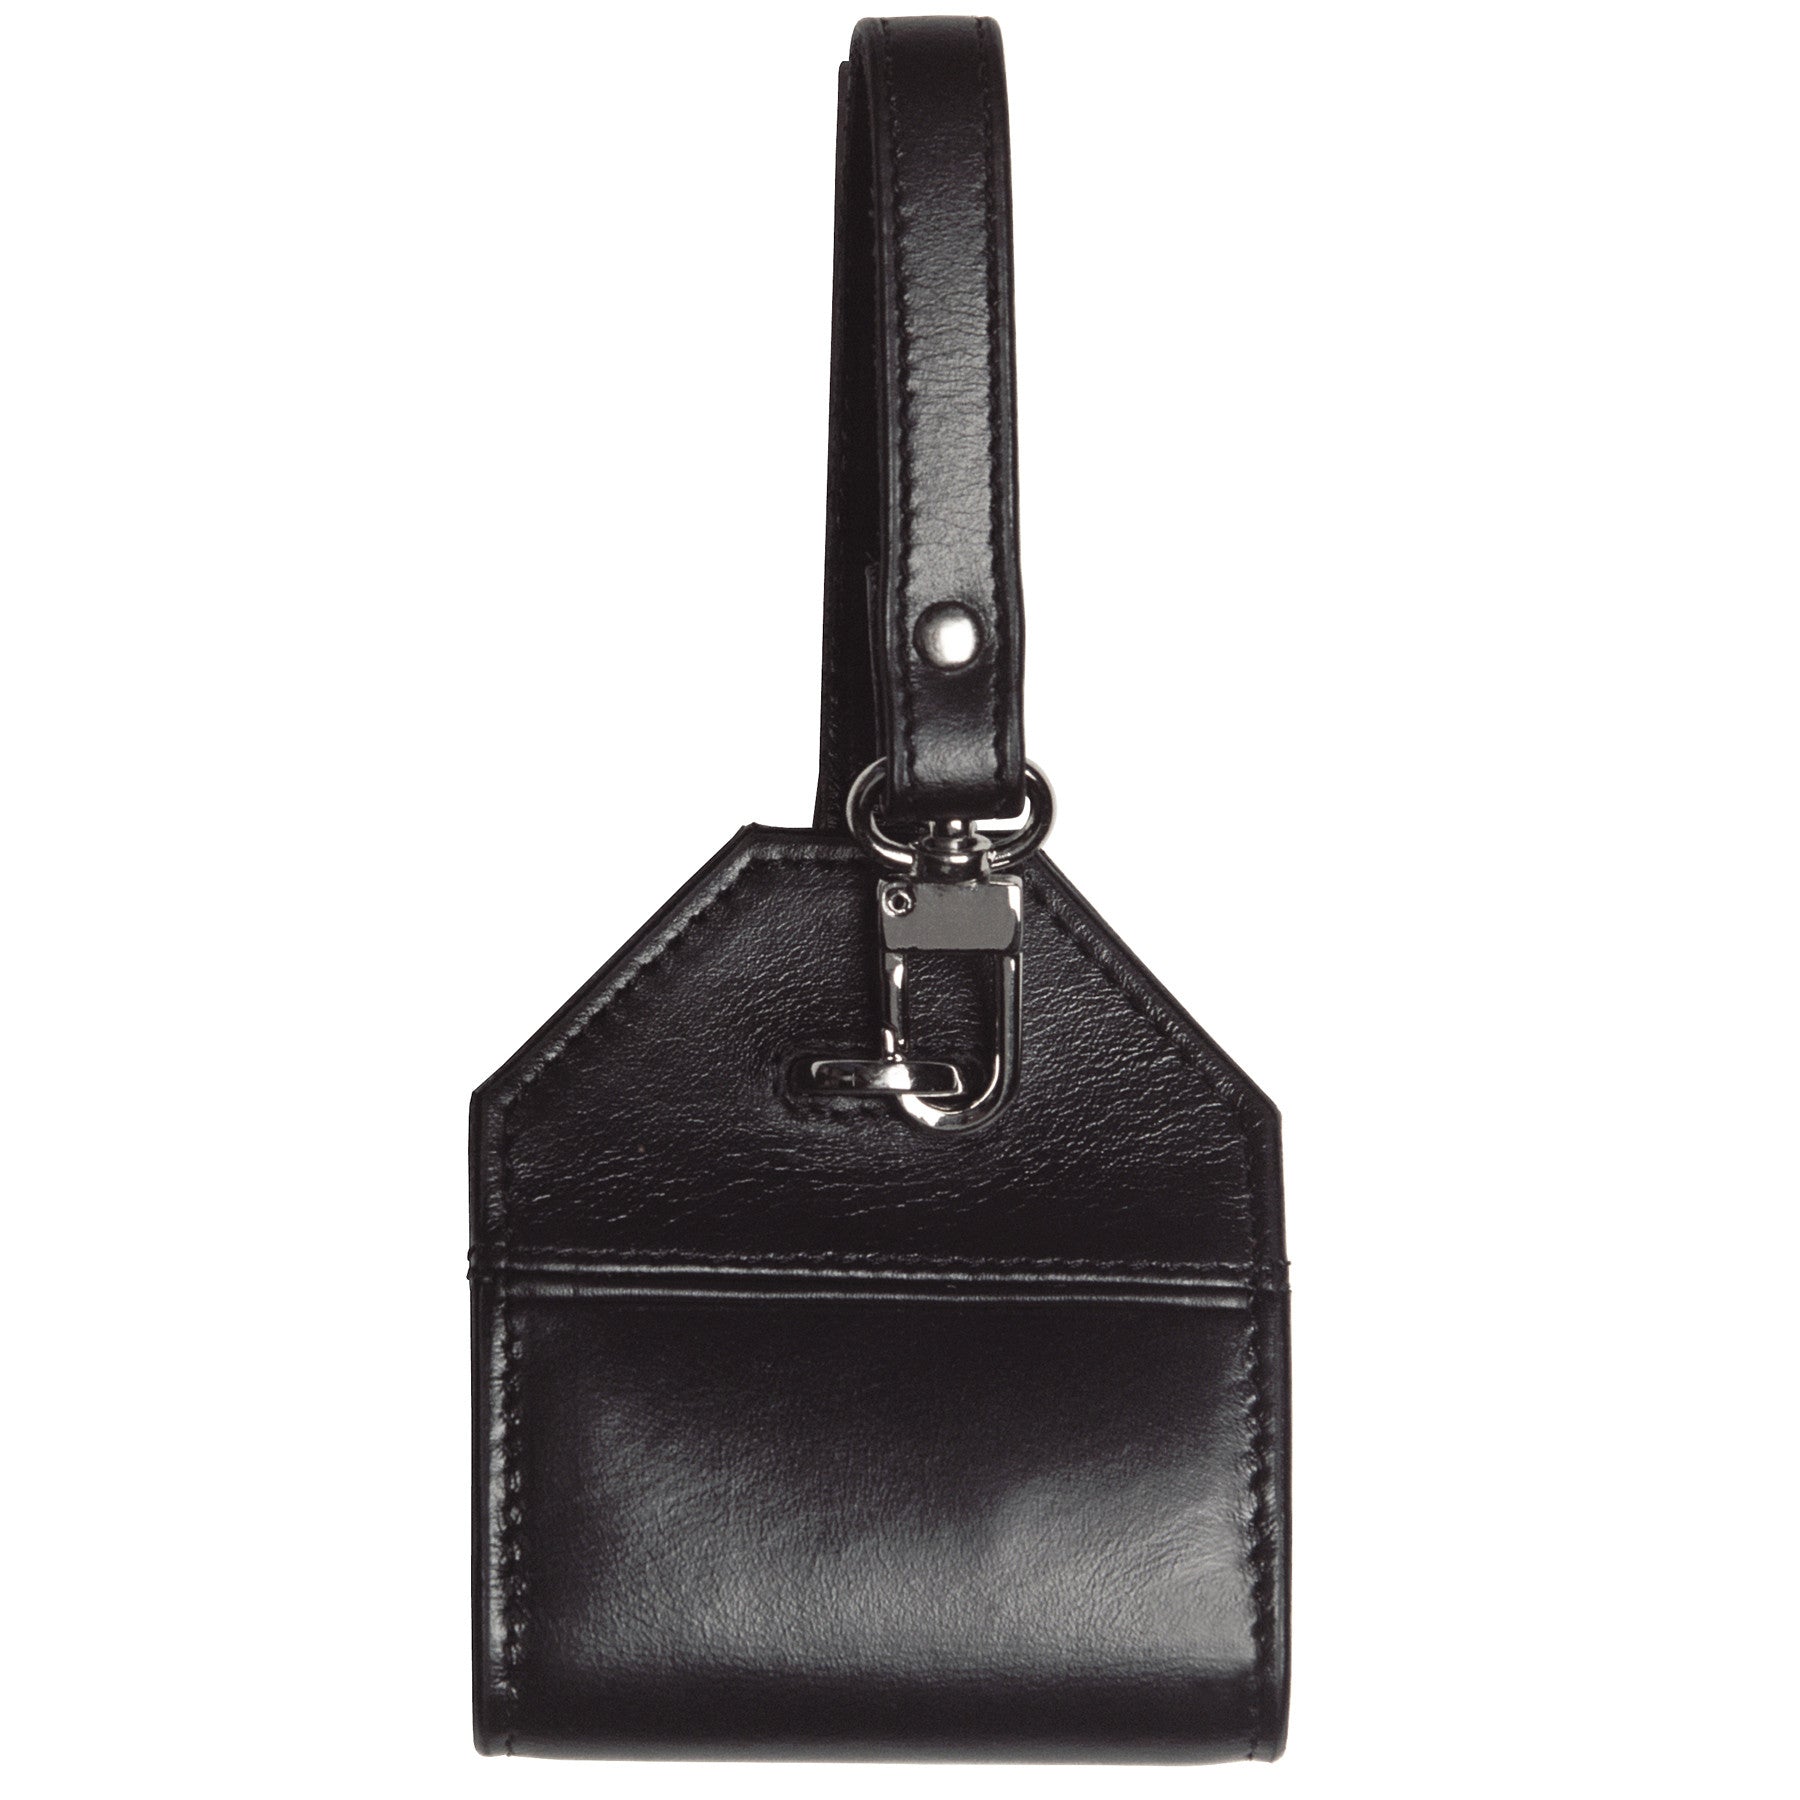 Alicia Klein leather luggage tag, black